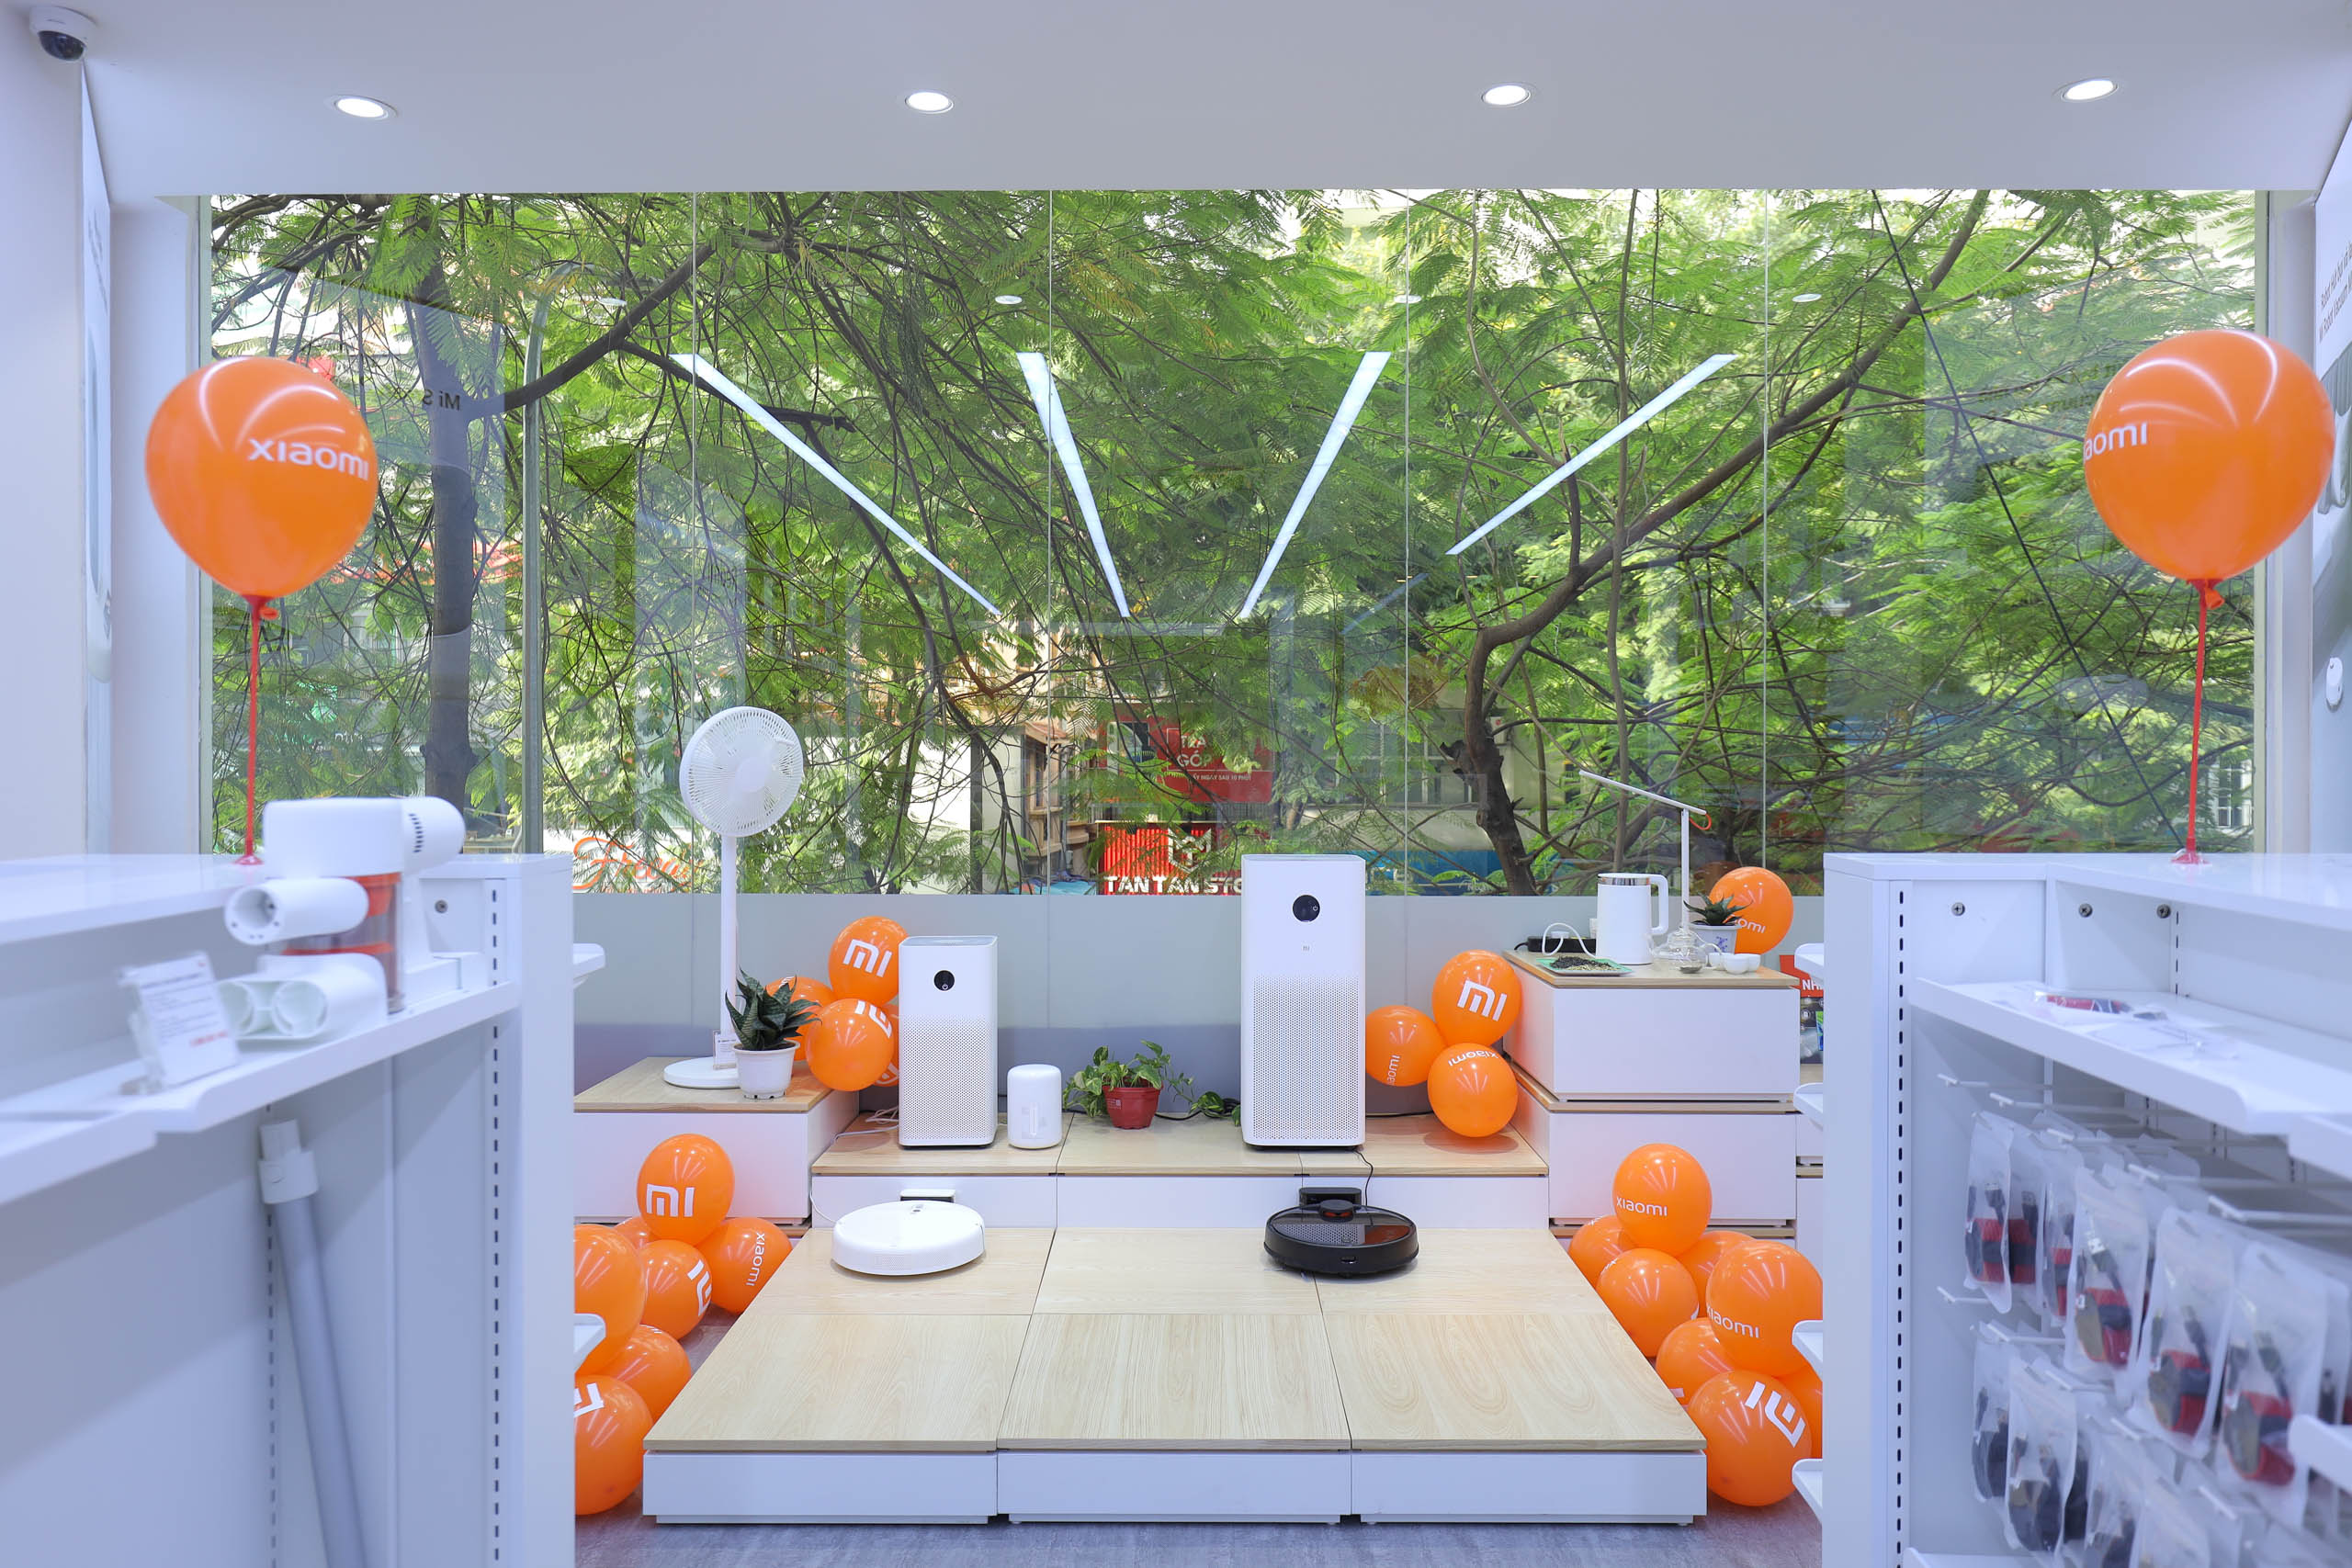 Xiaomi khai trương cửa hàng Mi Store ủy quyền tại Hà Nội